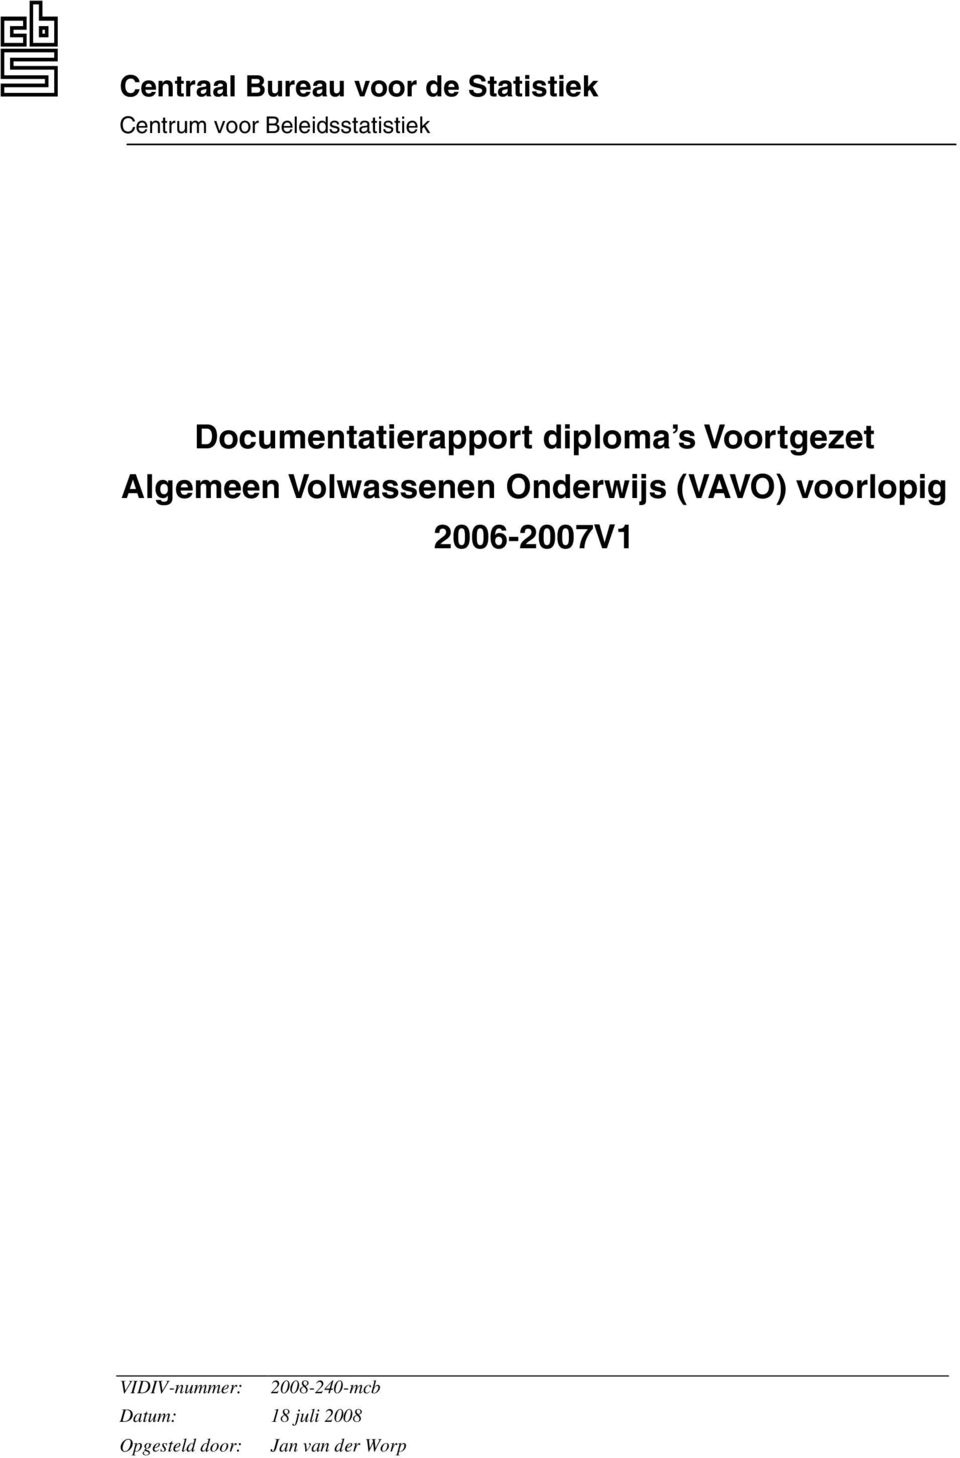 Algemeen Volwassenen Onderwijs (VAVO) voorlopig 2006-2007V1